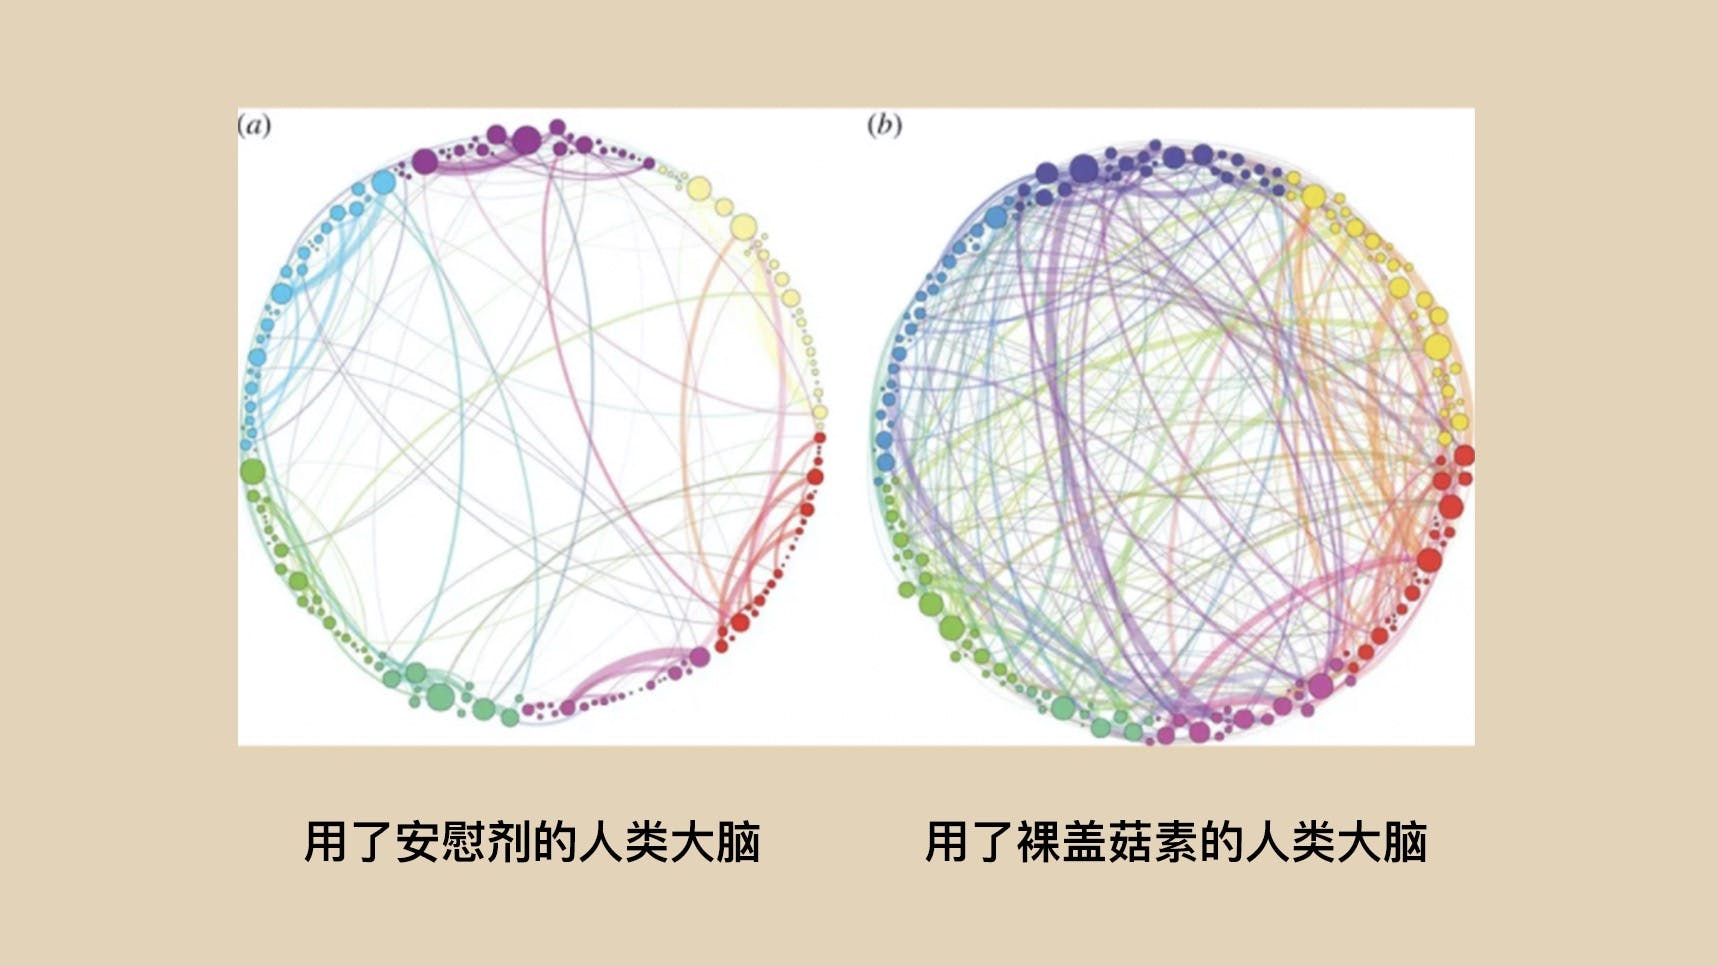 在上面的图片中，不同的颜色代表大脑的不同功能区间。在左边，粗线条表示，大脑相同区间之内有更强的联系。而在右边，代表强联系的粗线条连通了各个不同区间。